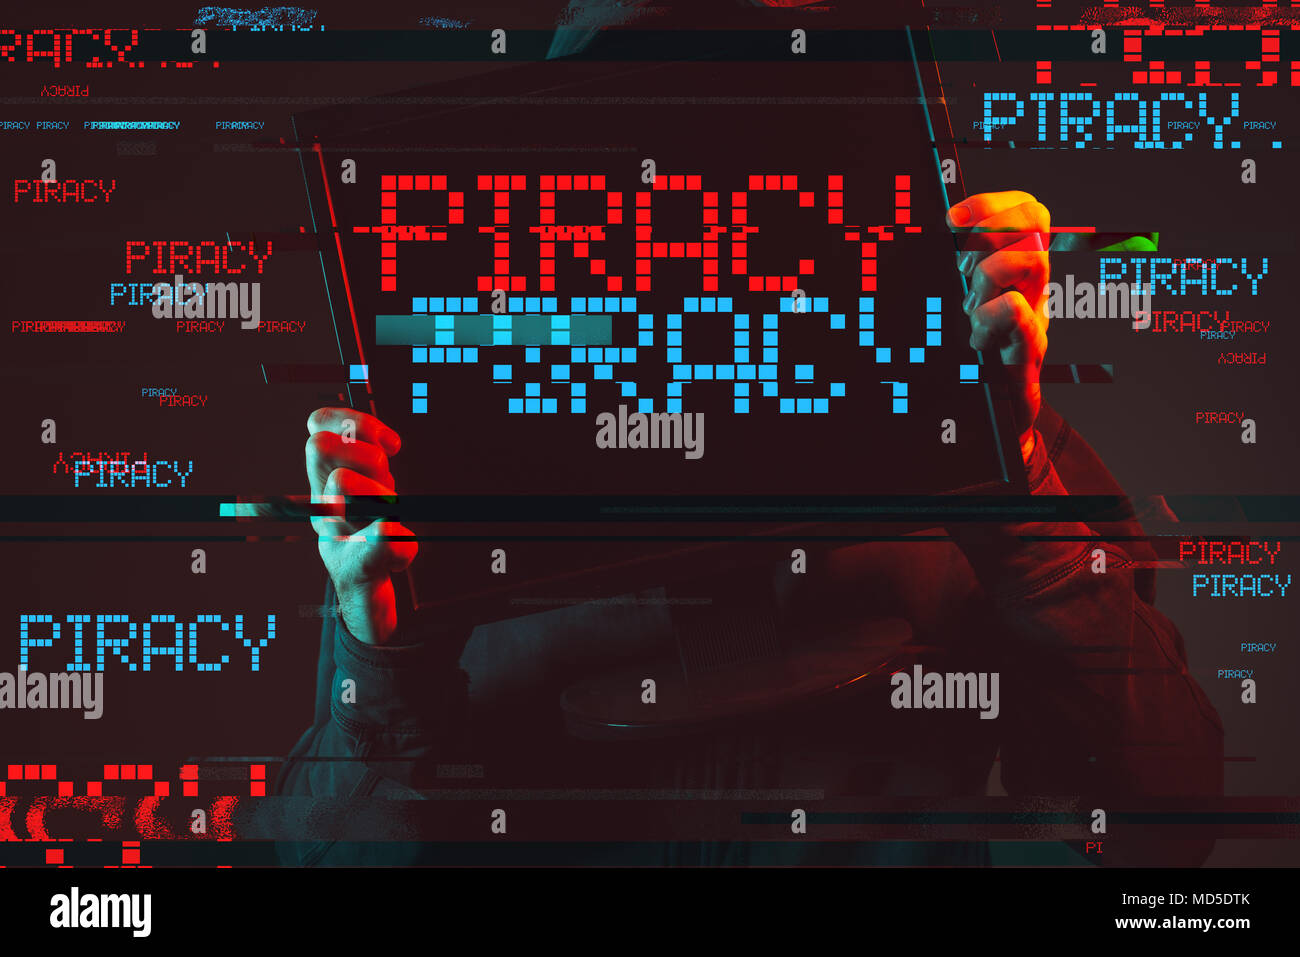 Piraterie im Internet Konzept mit gesichtslosen Hooded männliche Person, Low Key rot und blau beleuchtete Bild und digitale glitch Wirkung Stockfoto